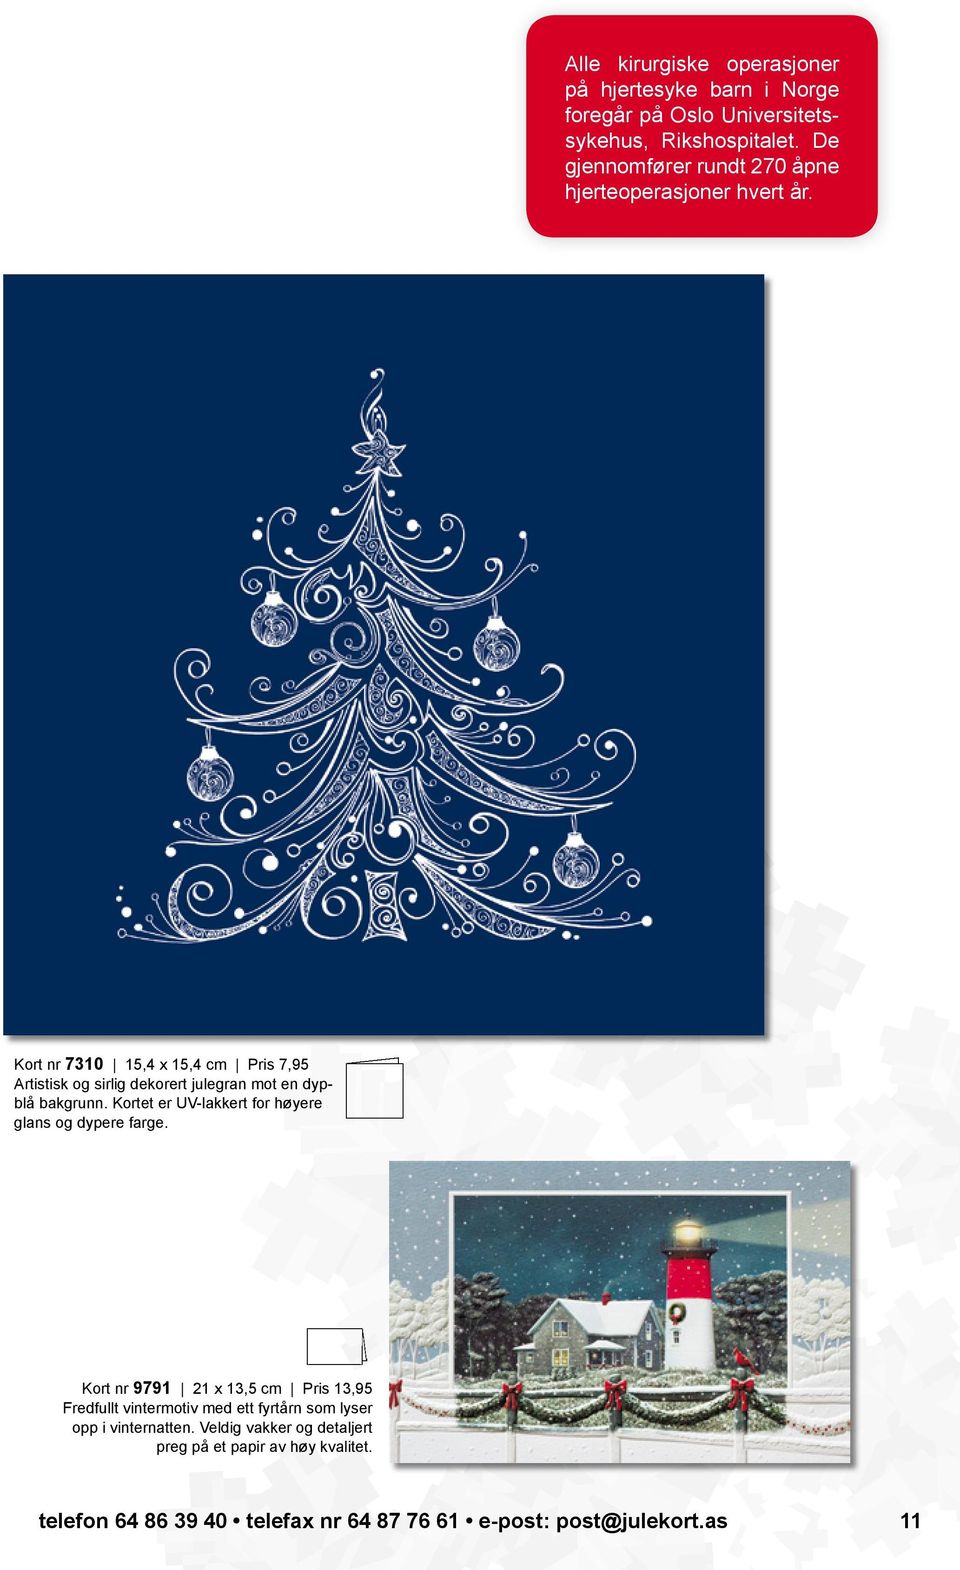 Kort nr 7310 15,4 x 15,4 cm Pris 7,95 Artistisk og sirlig dekorert julegran mot en dypblå bakgrunn.